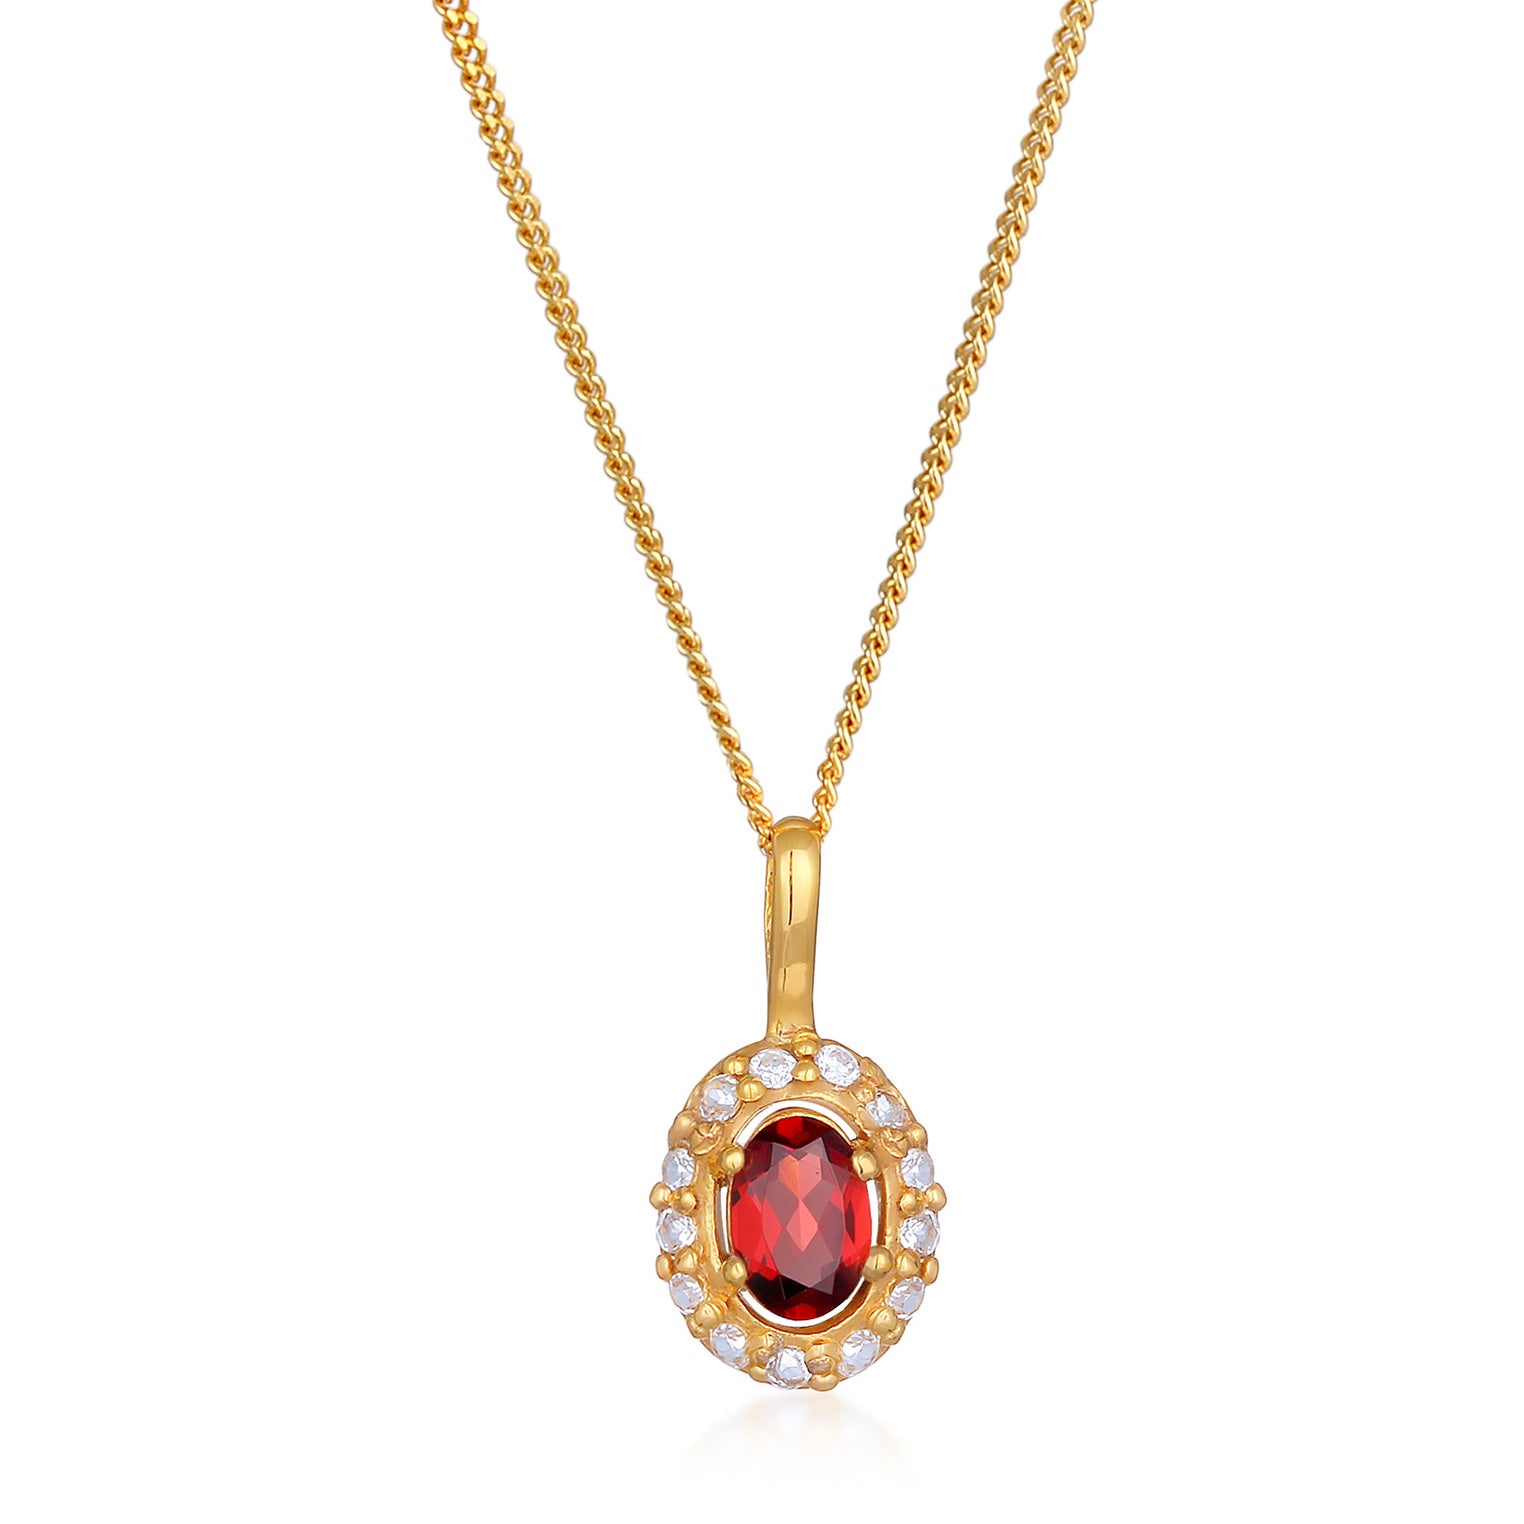 Halskette Edelstein Anhänger | Topas, Granat (Rot) | 585er Gelbgold